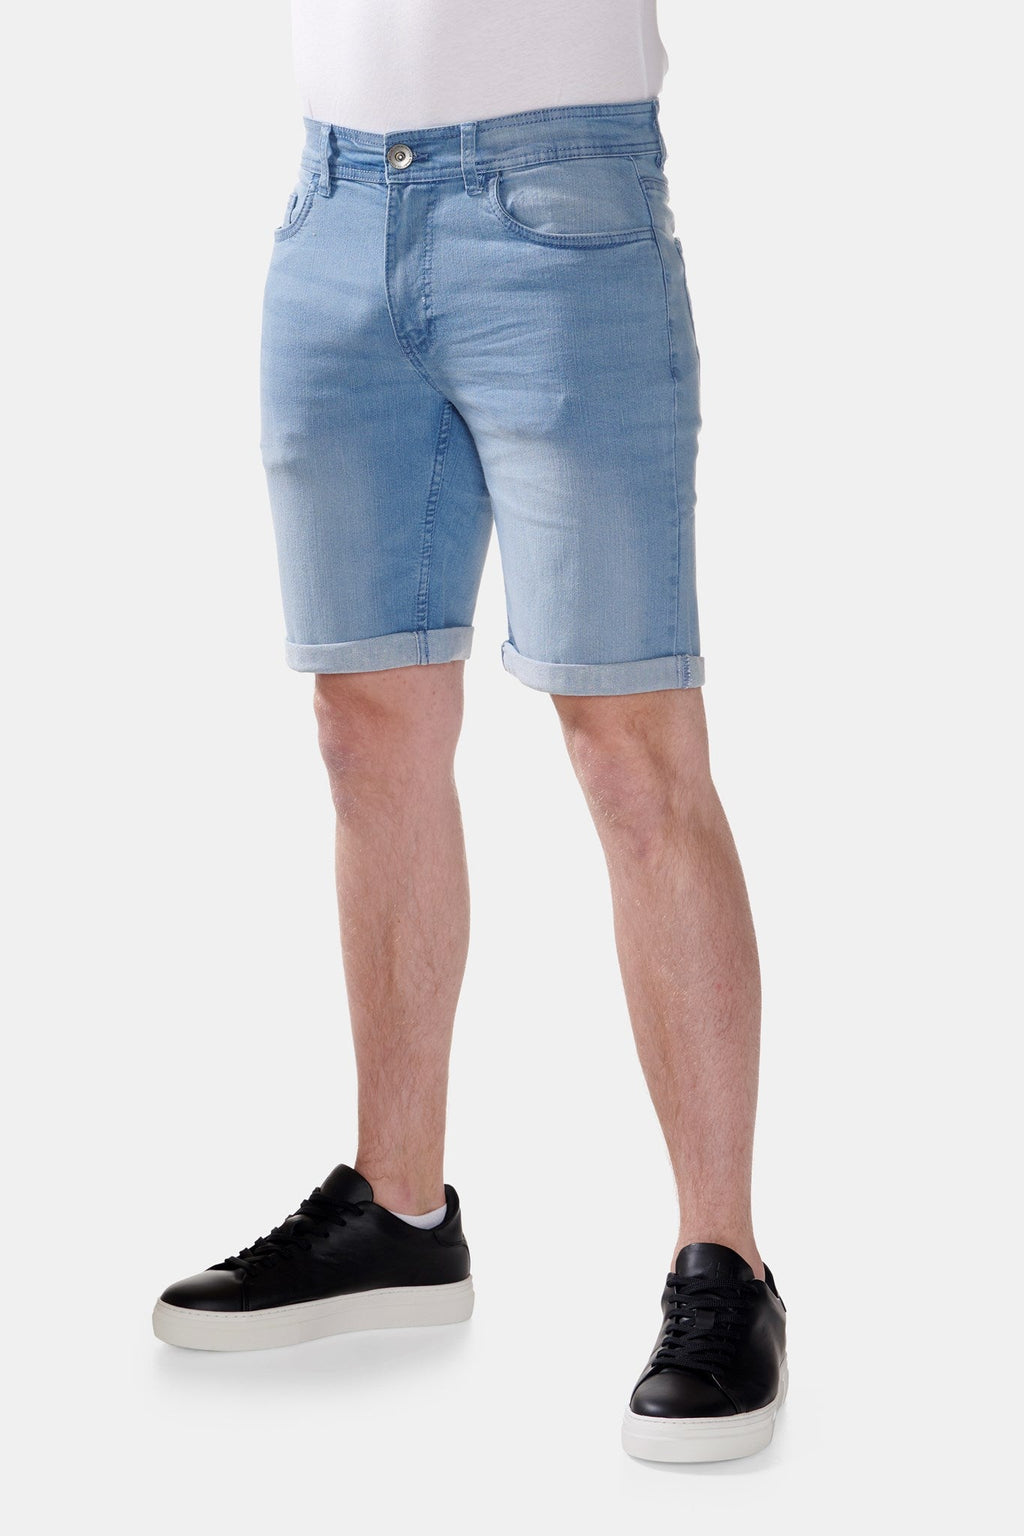 原版高性能牛仔短裤 - 浅蓝色